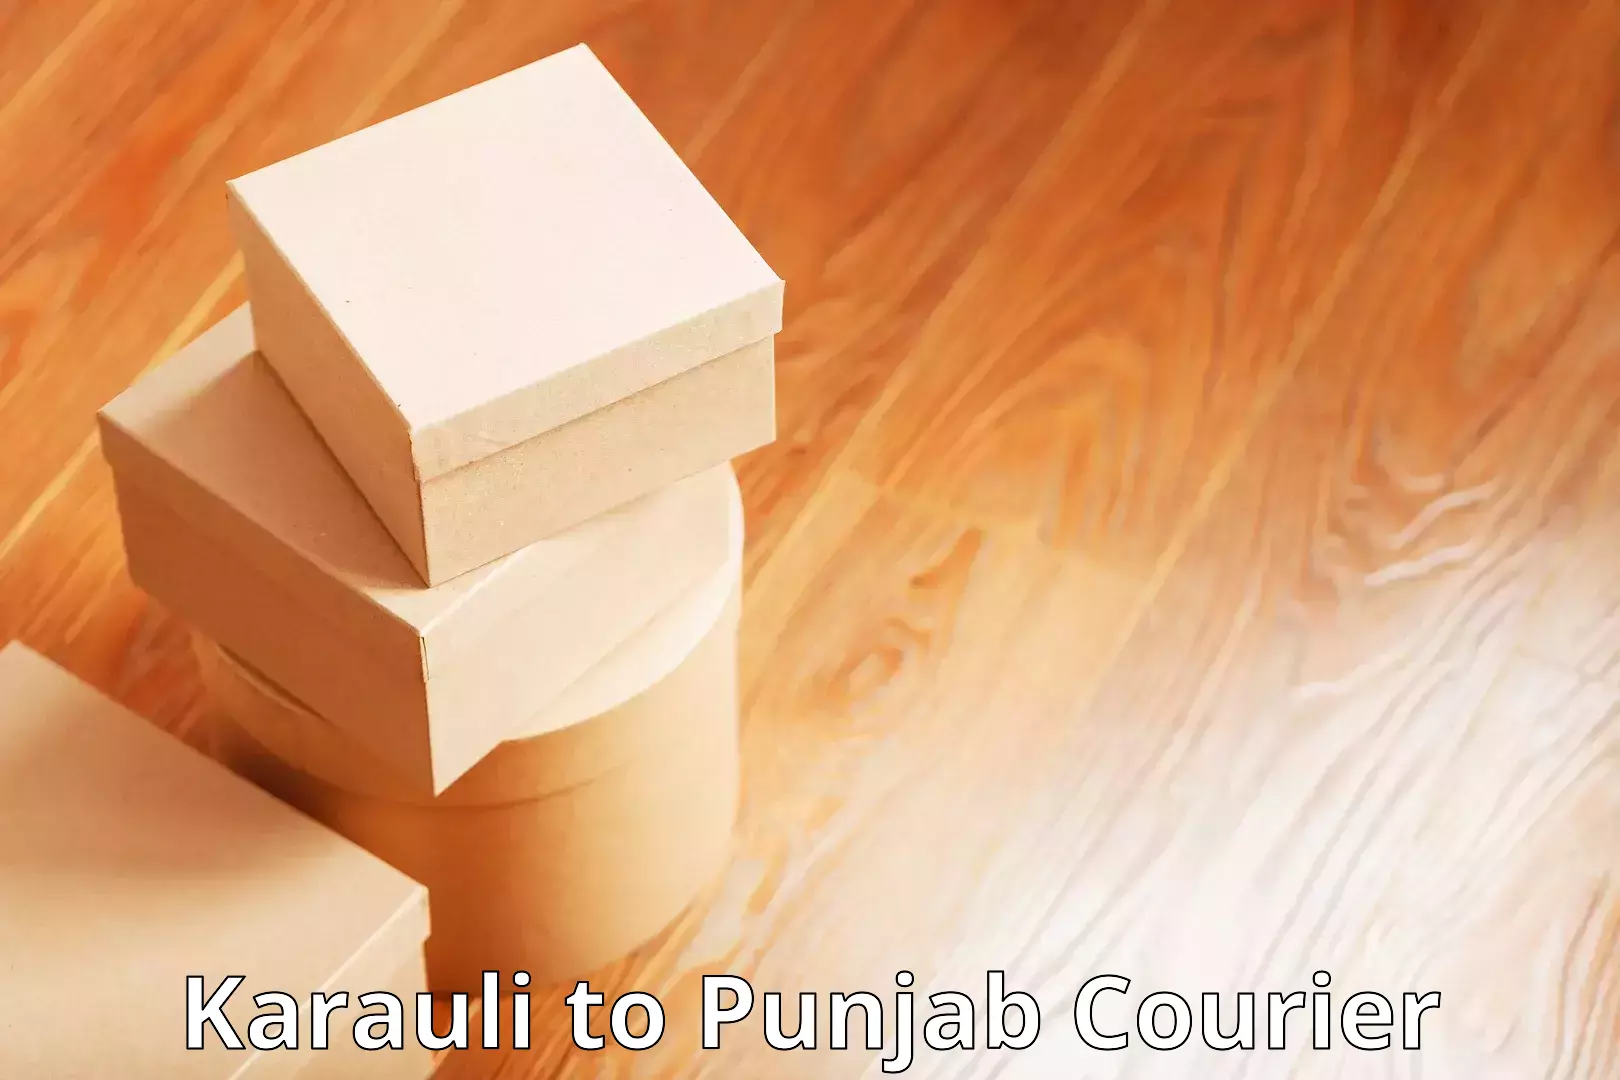 Automated shipping processes Karauli to Punjab